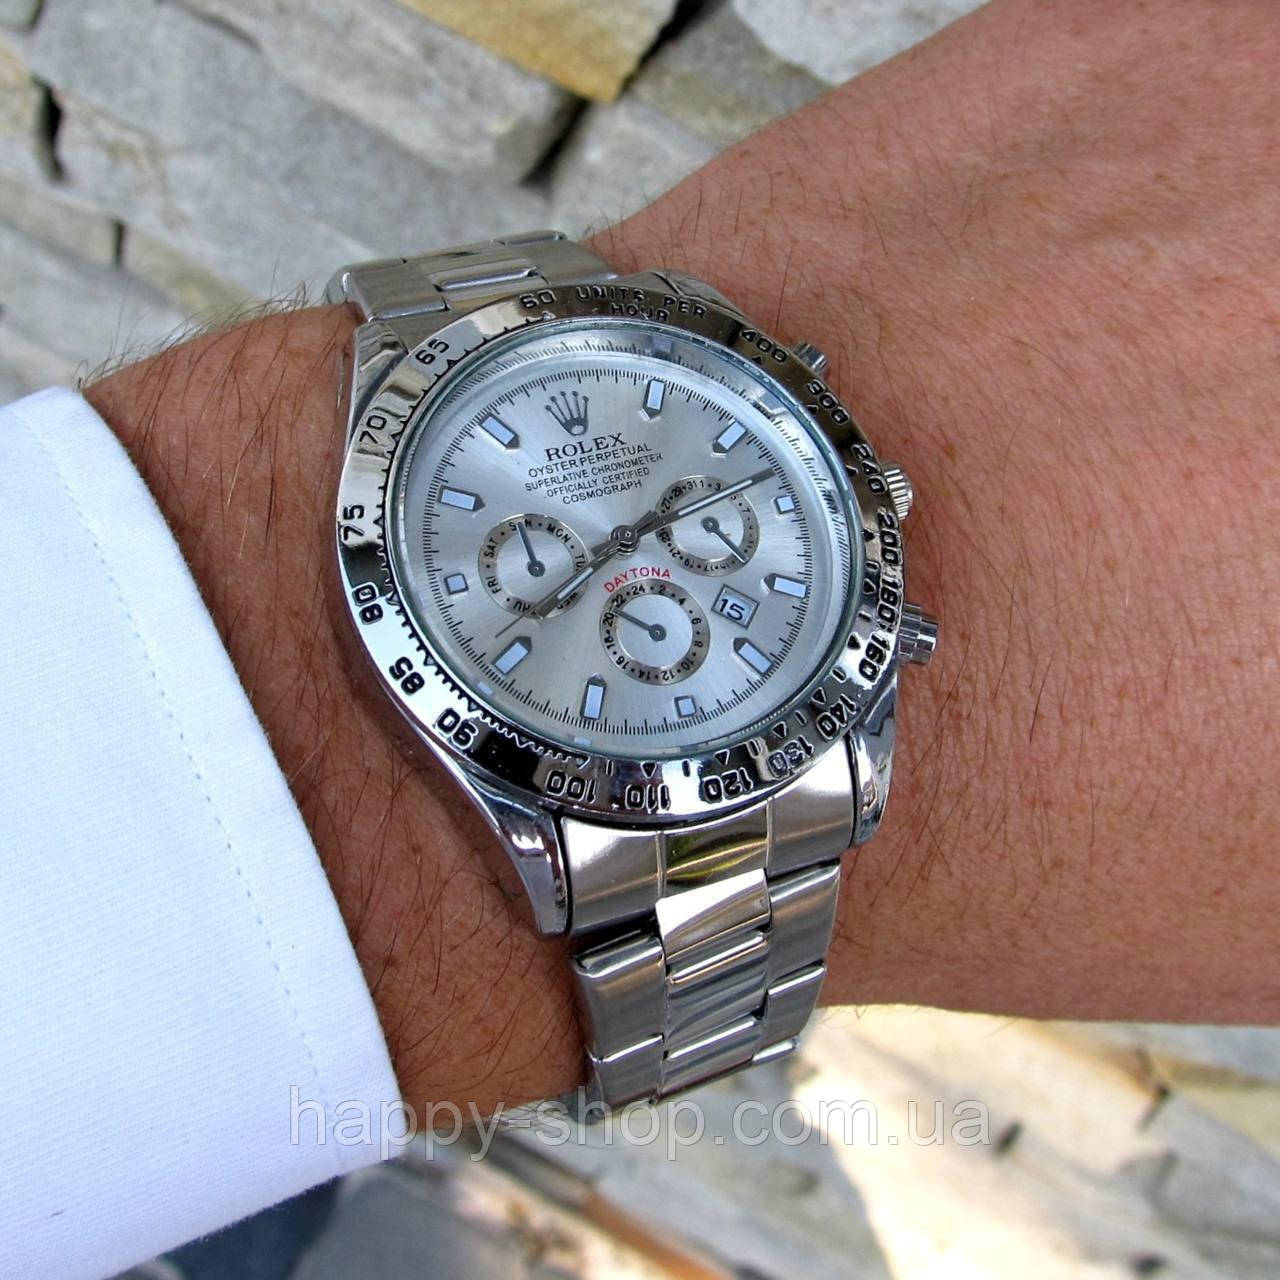 Чоловічий наручний стильний годинник на руку срібний